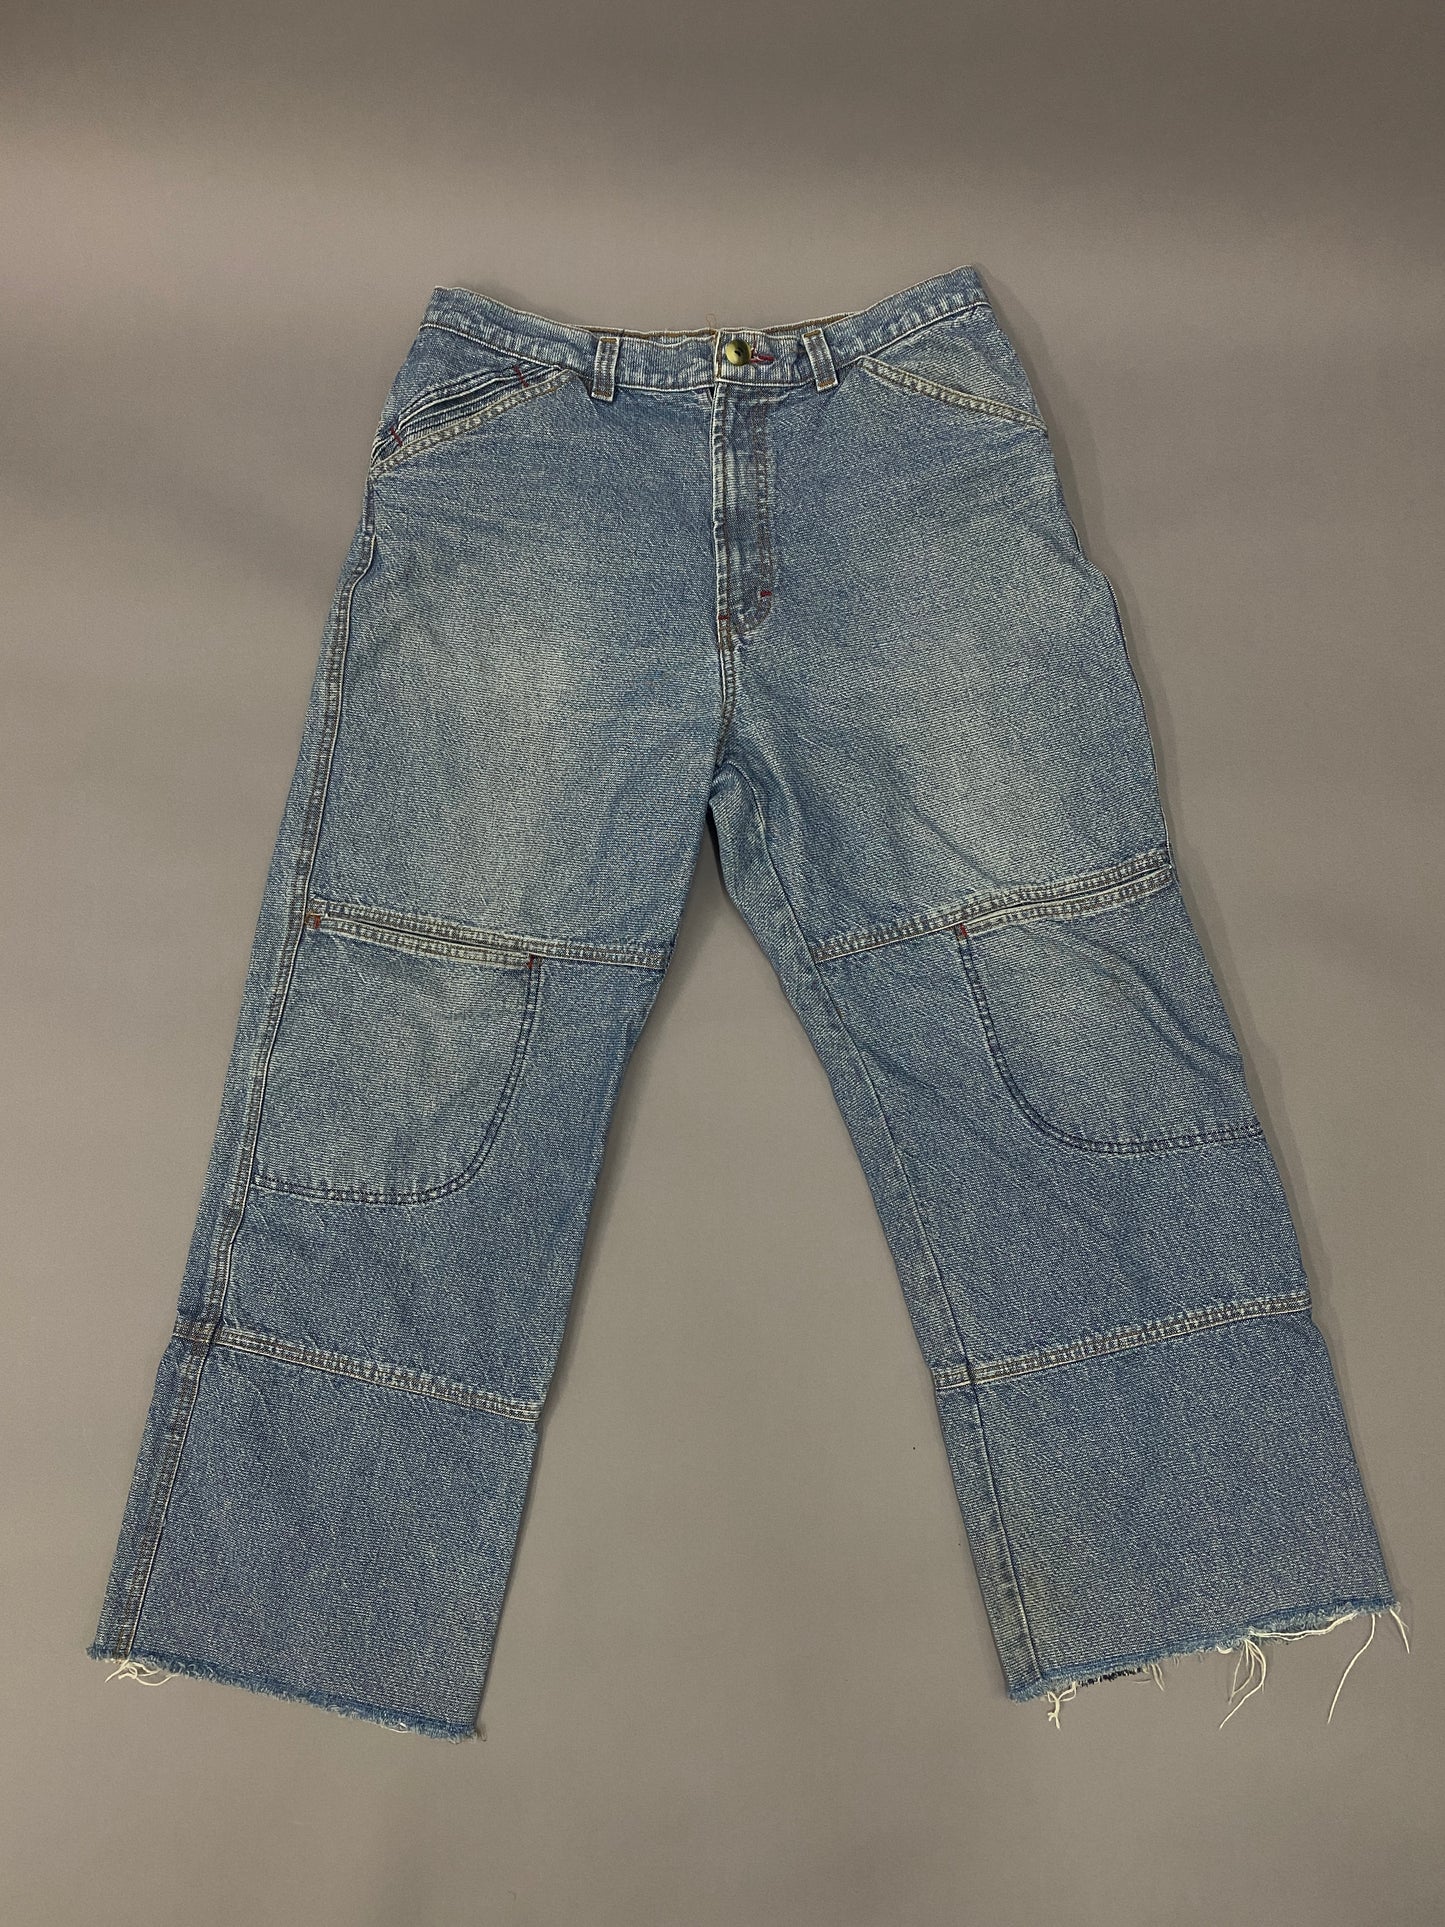 Vintage Raver Jeans - 33